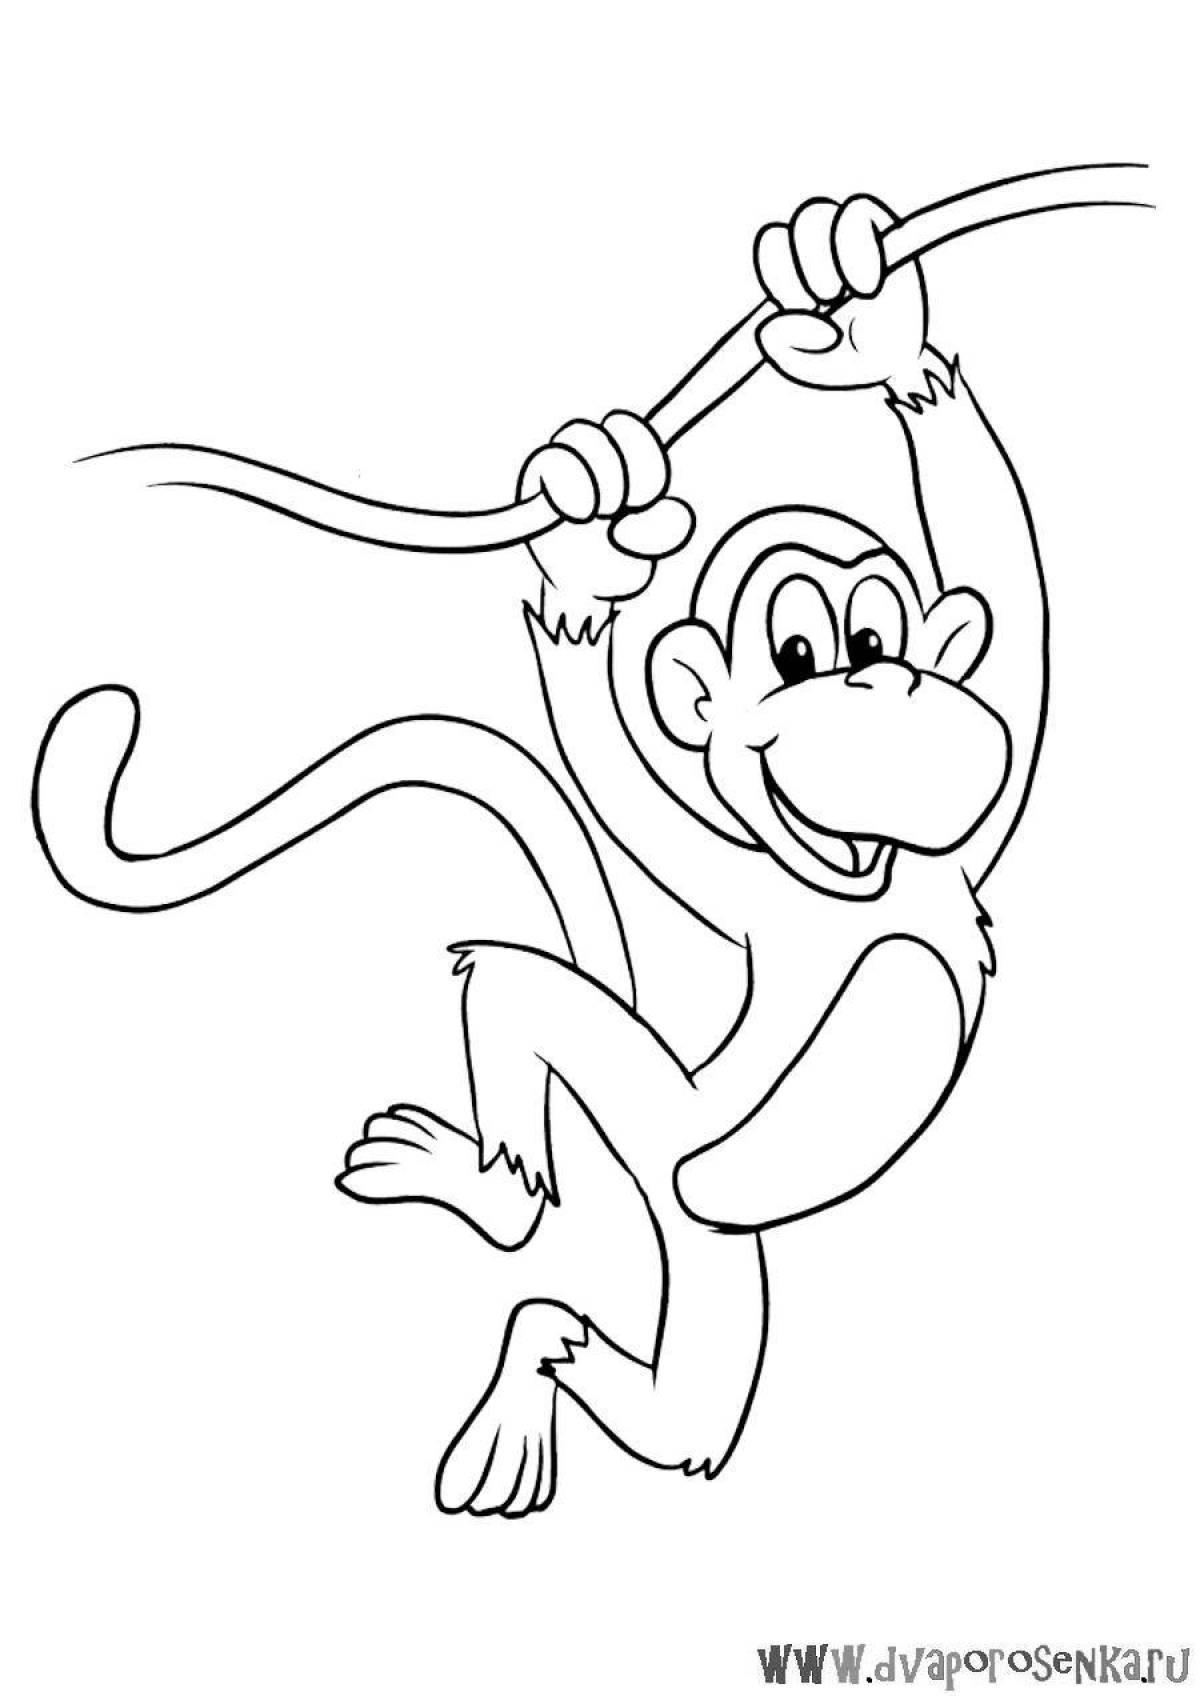 Рисунок обезьяны Изображения – скачать бесплатно на Freepik